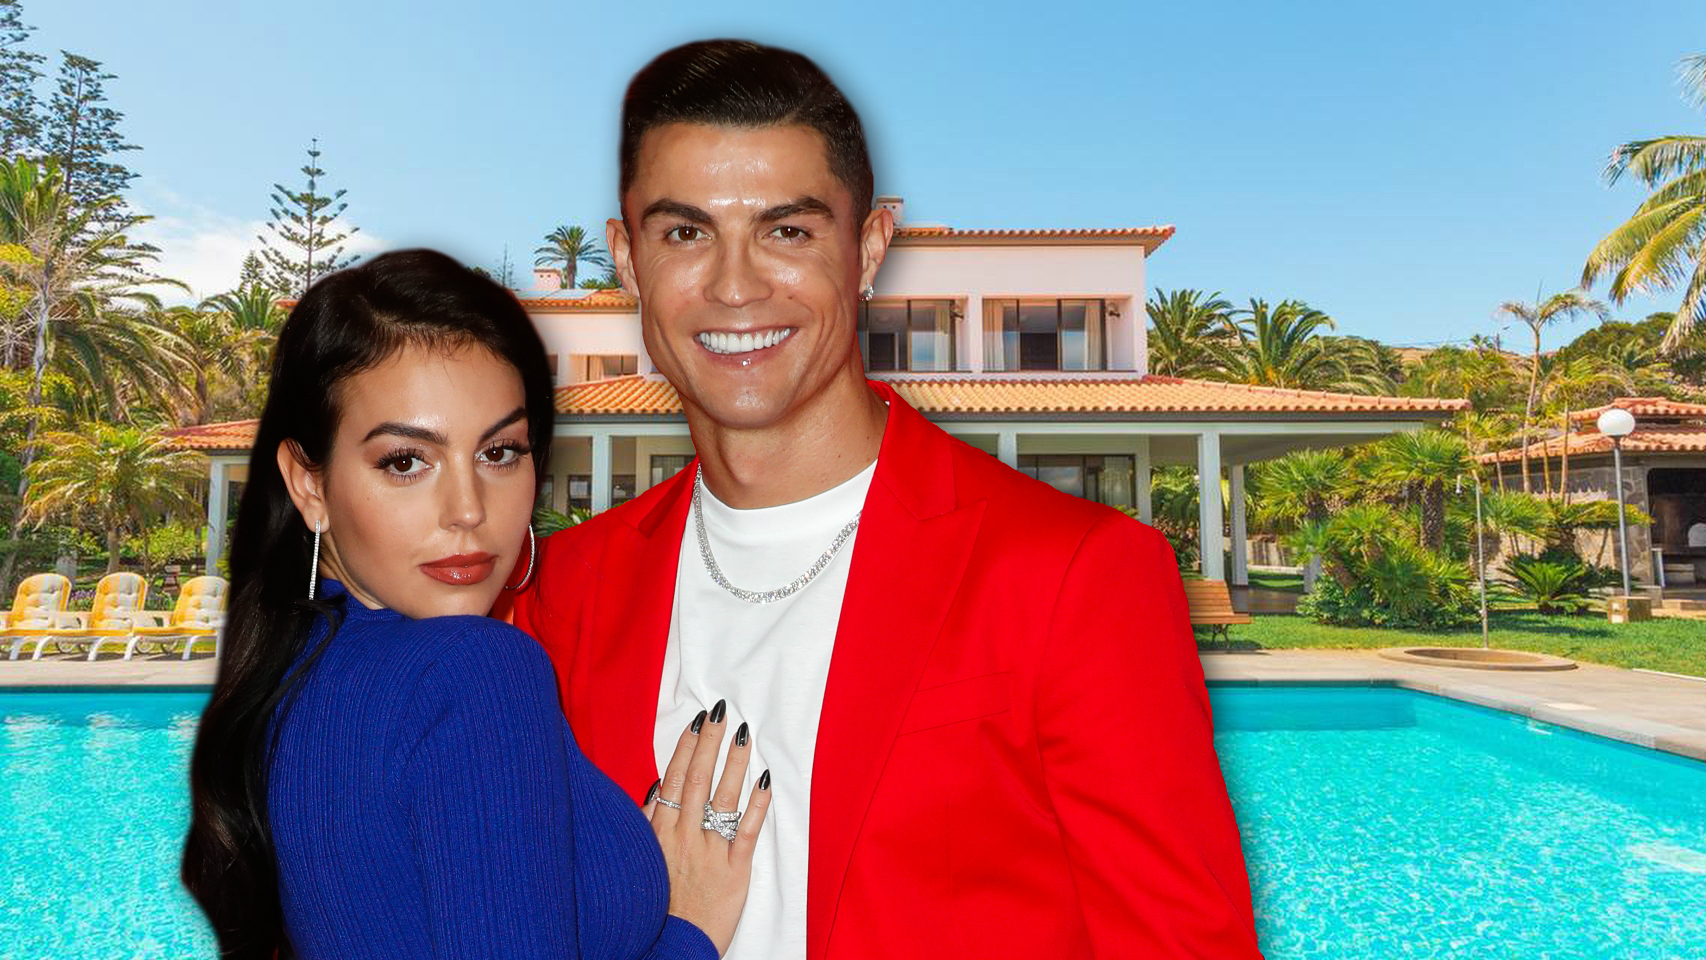 Esta es la lujosa casa a la que se mudaron Cristiano Ronaldo y Georgina Rodríguez para pasar la cuarentena (fotos)